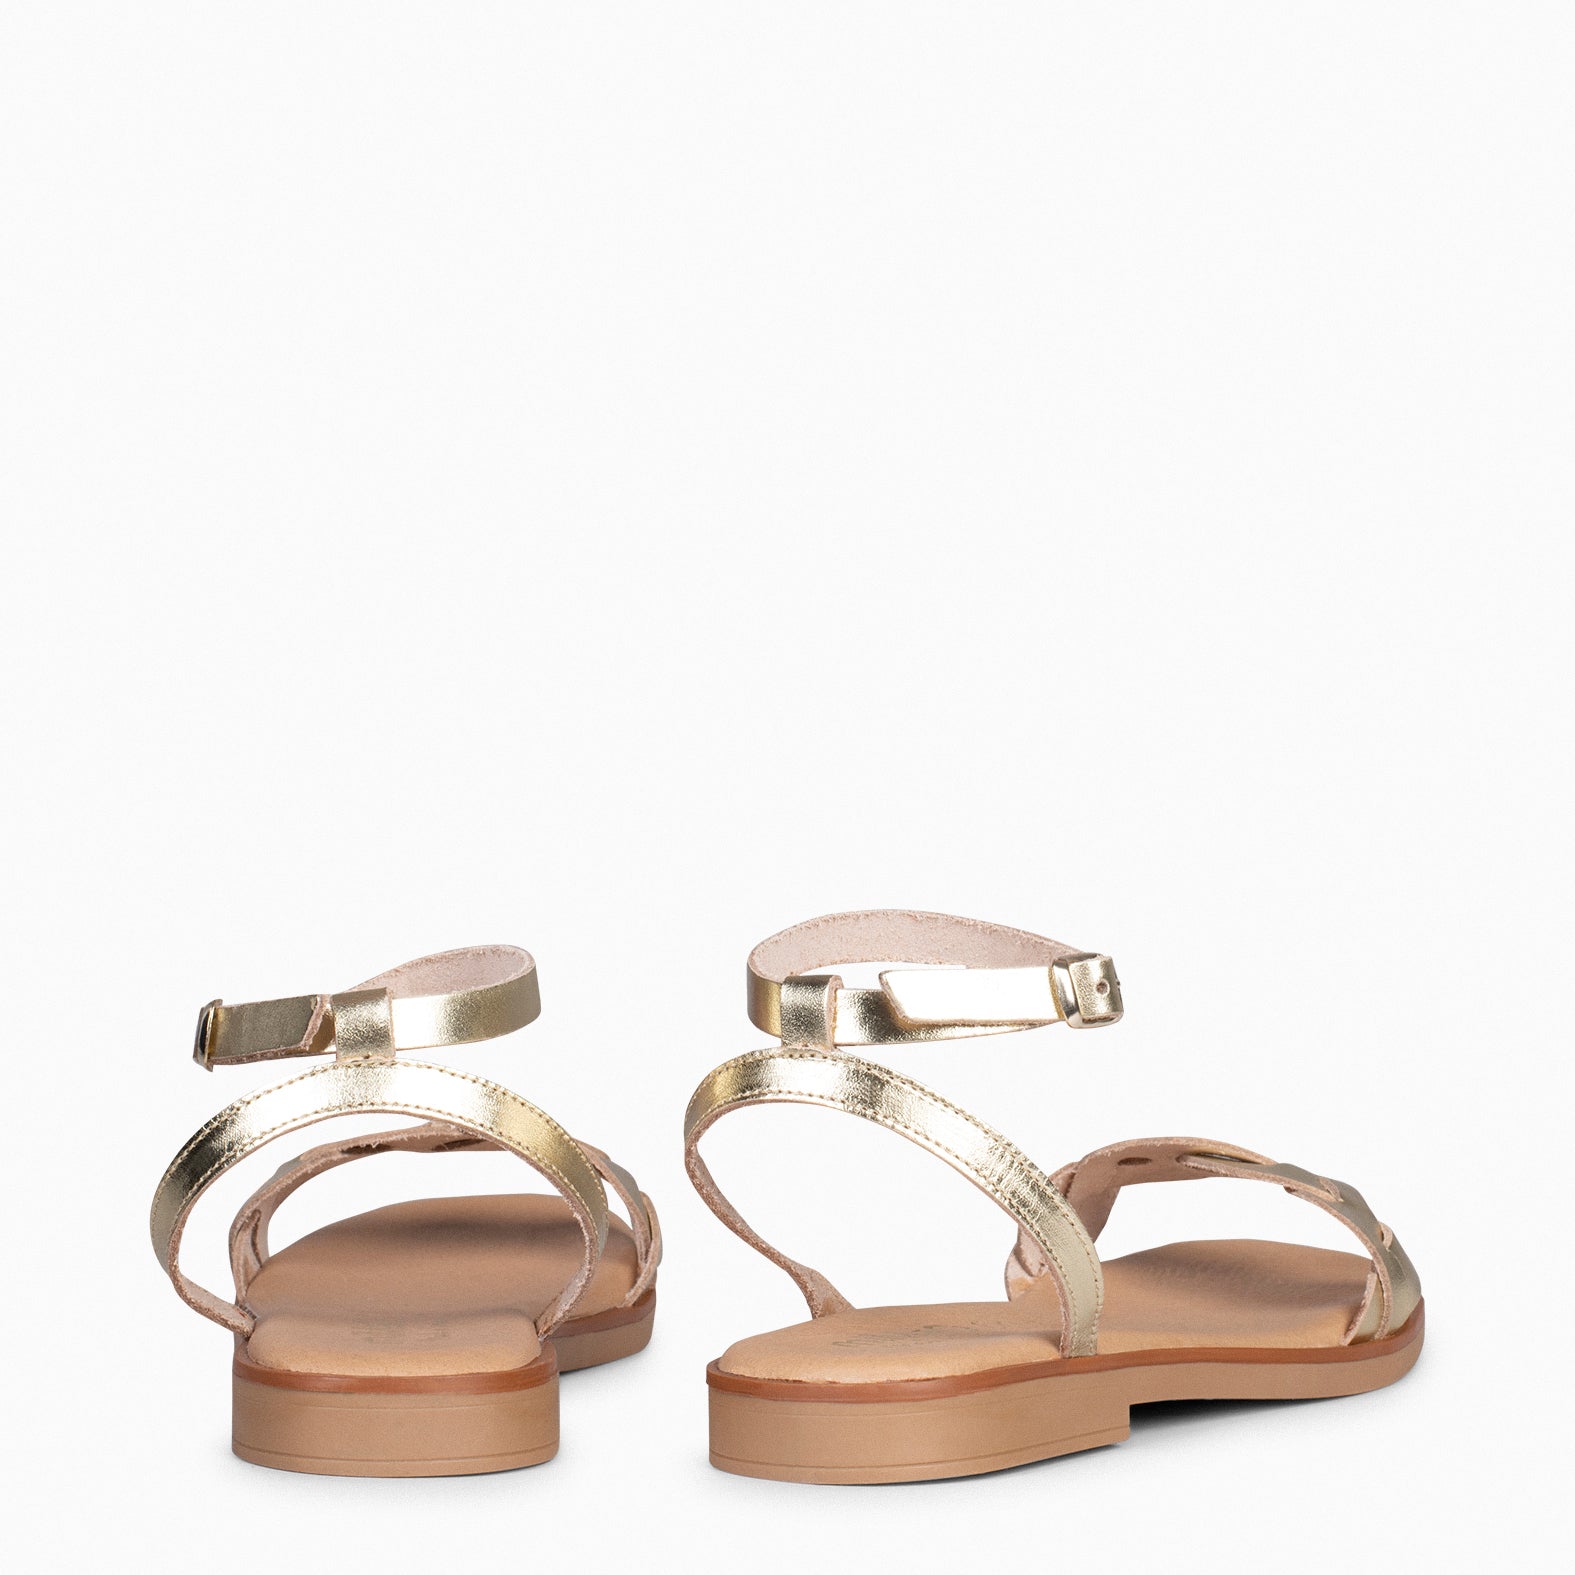 ARECA - GOLDEN Women's Flat Sandals